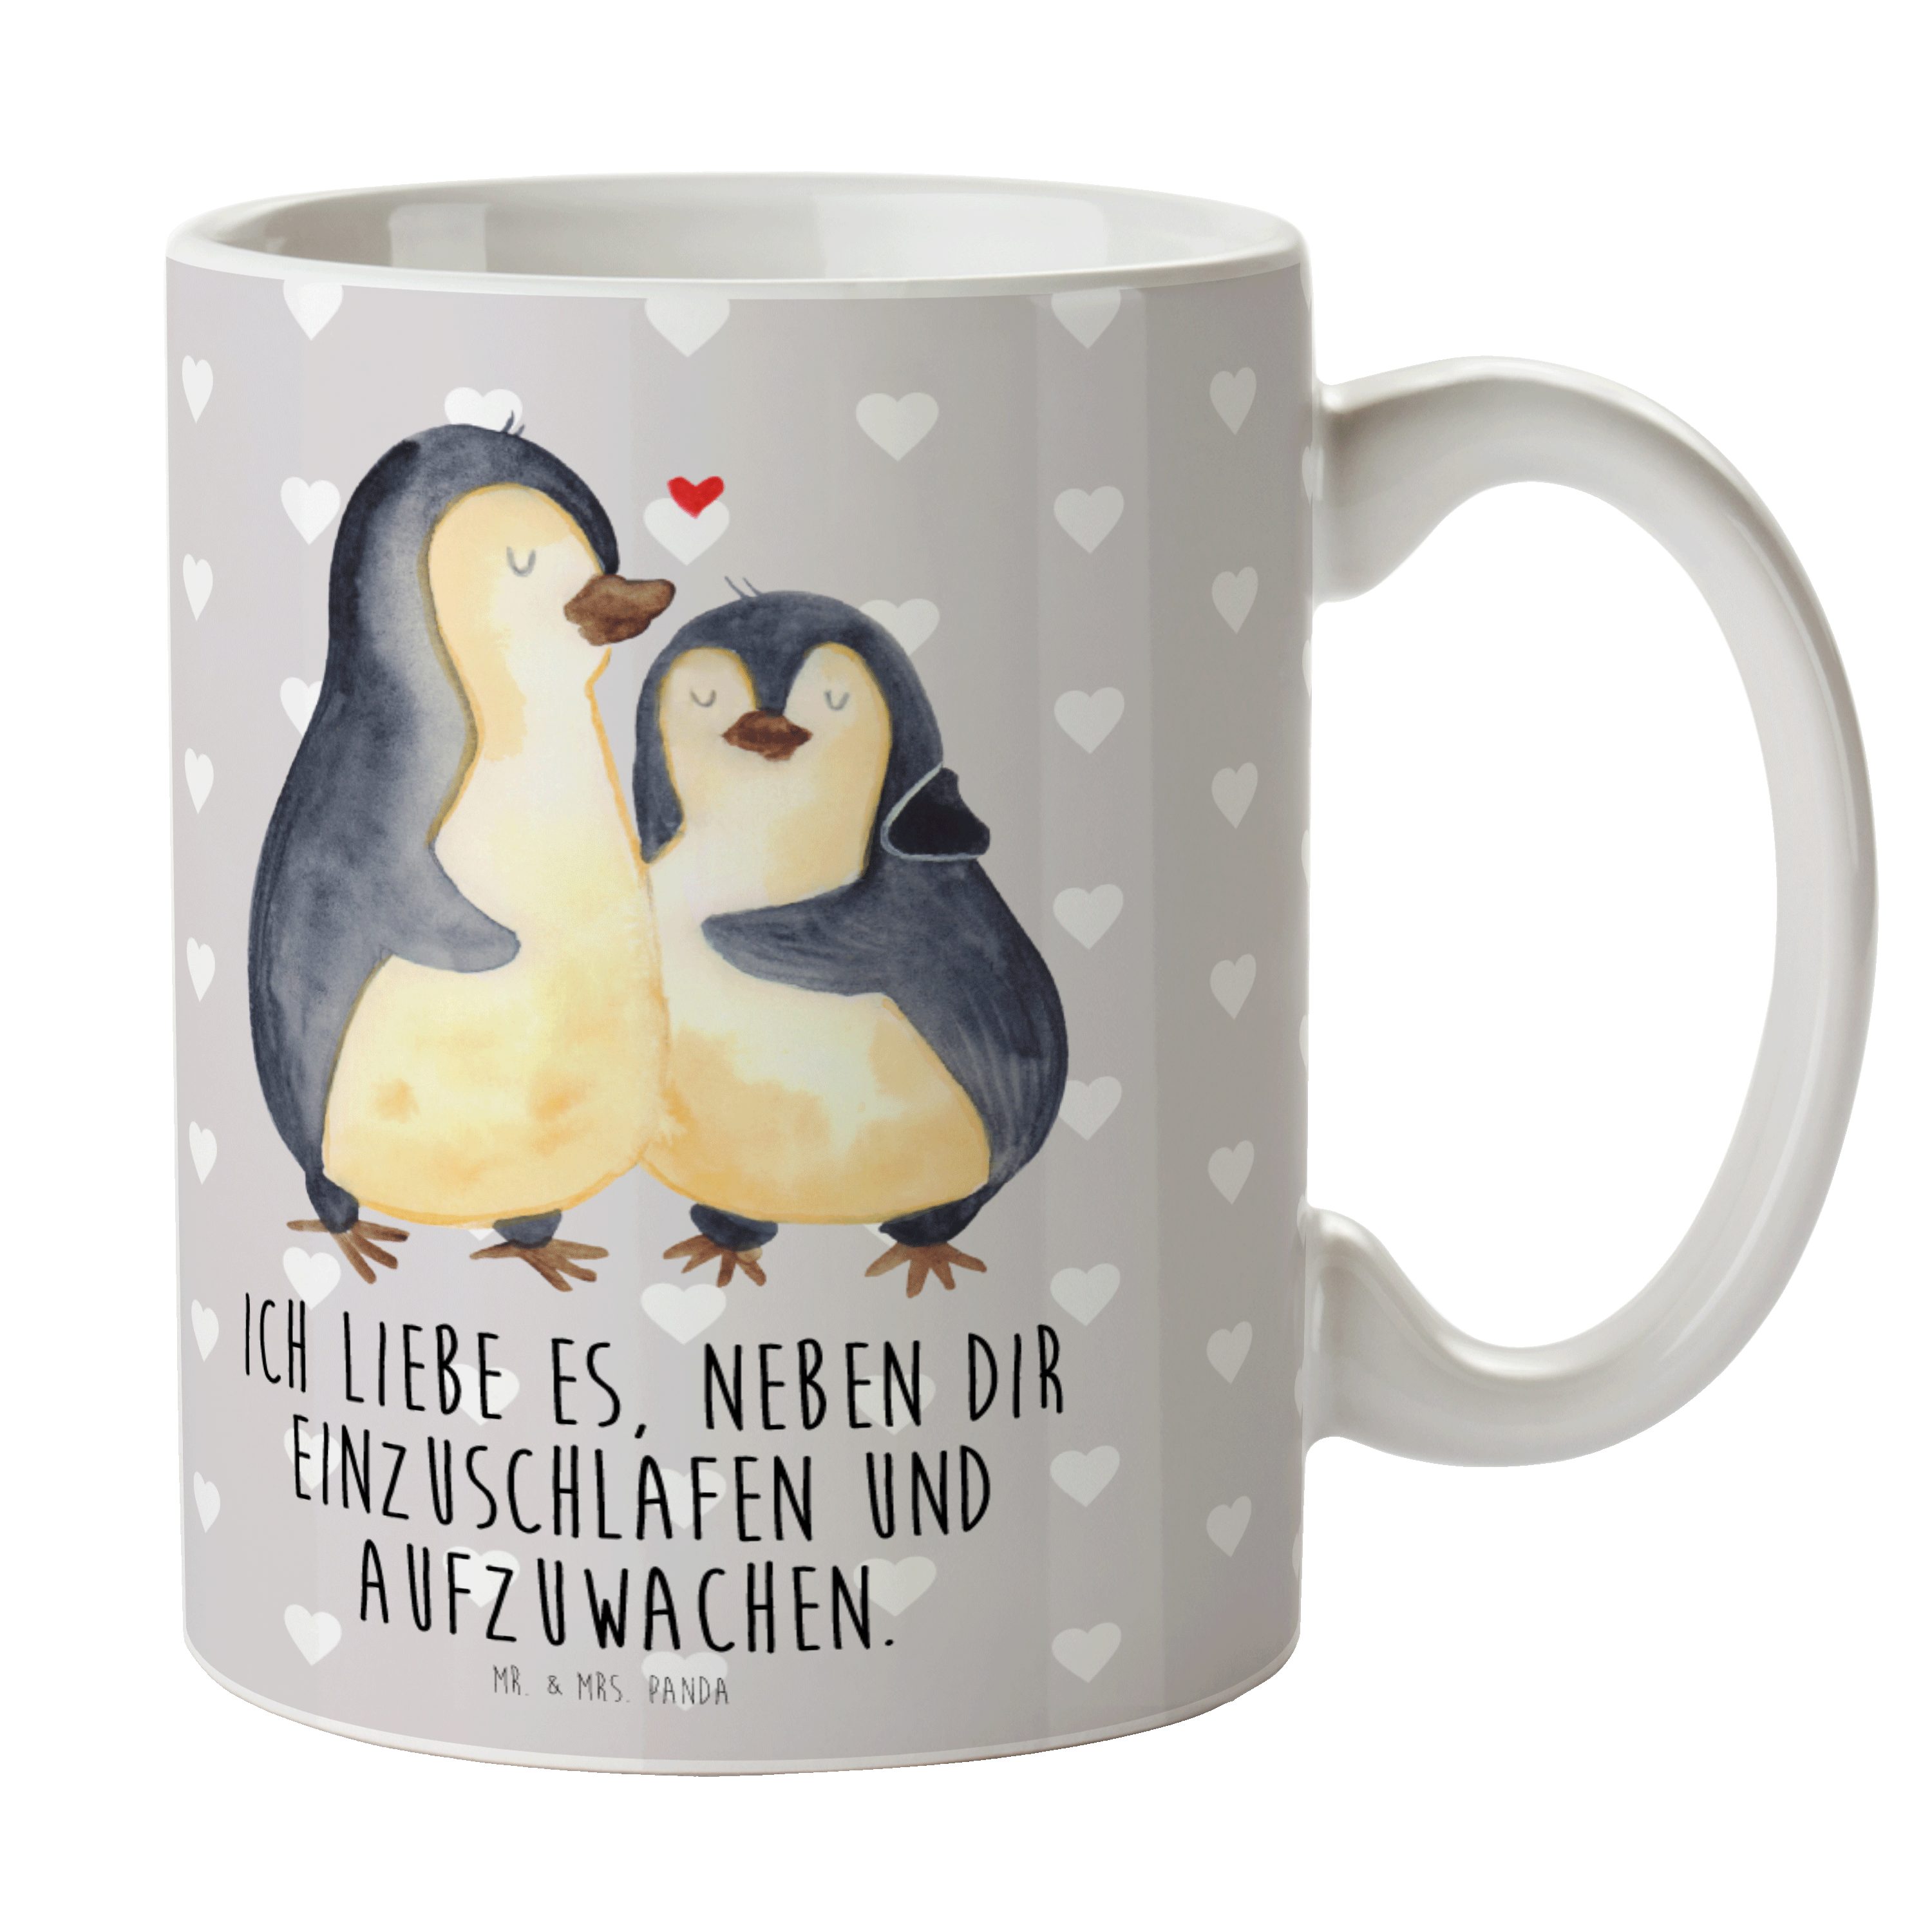 Mr. & Mrs. Panda Tasse Pinguine Einschlafen - Grau Pastell - Geschenk, Heiraten, Liebesgesch, Keramik